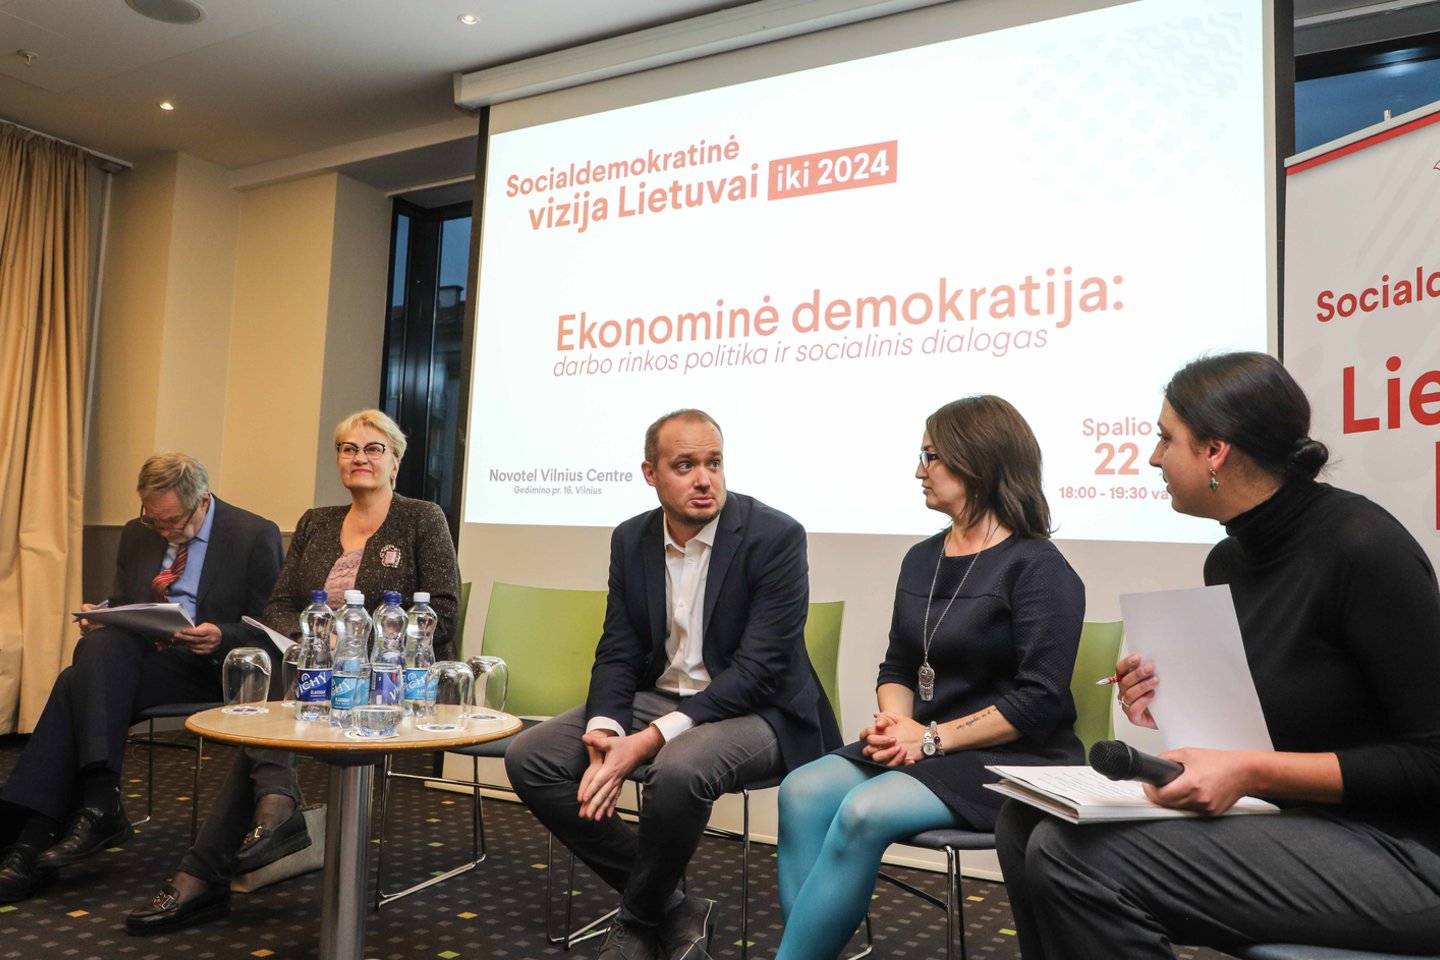  Lietuvos socialdemokratų partija (LSDP) pradeda mėnesį truksiančius viešus Socialdemokratinės vizijos Lietuvai iki 2024 metų svarstymus.<br> D.Labučio (ELTA) nuotr.